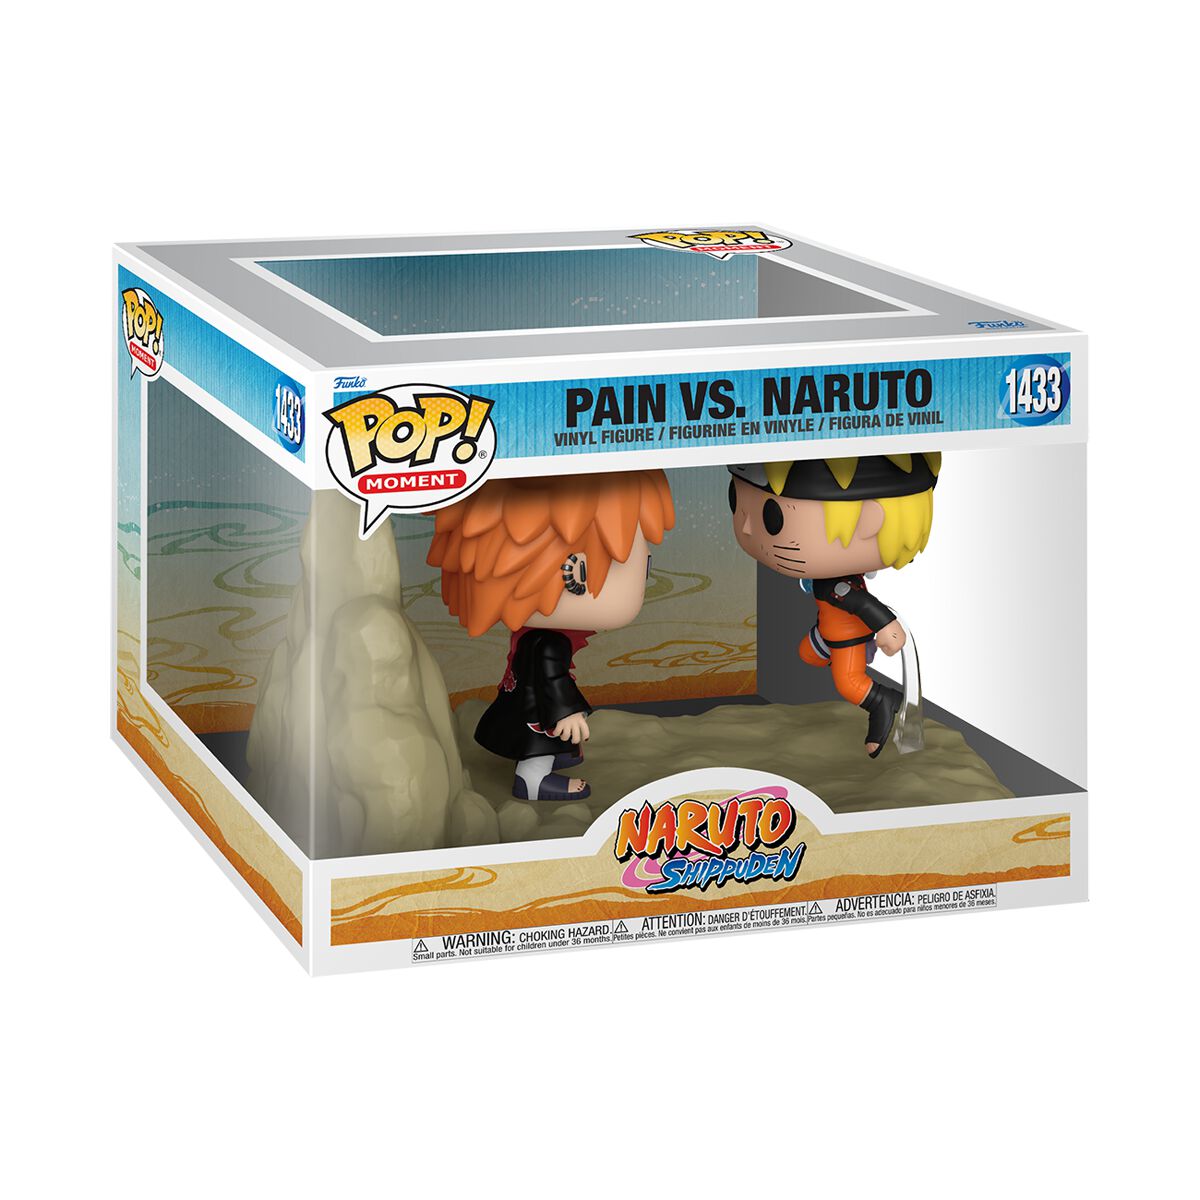 Naruto Pain vs. Naruto (Pop! Moment) Vinyl Figur 1433 Funko Pop! multicolor